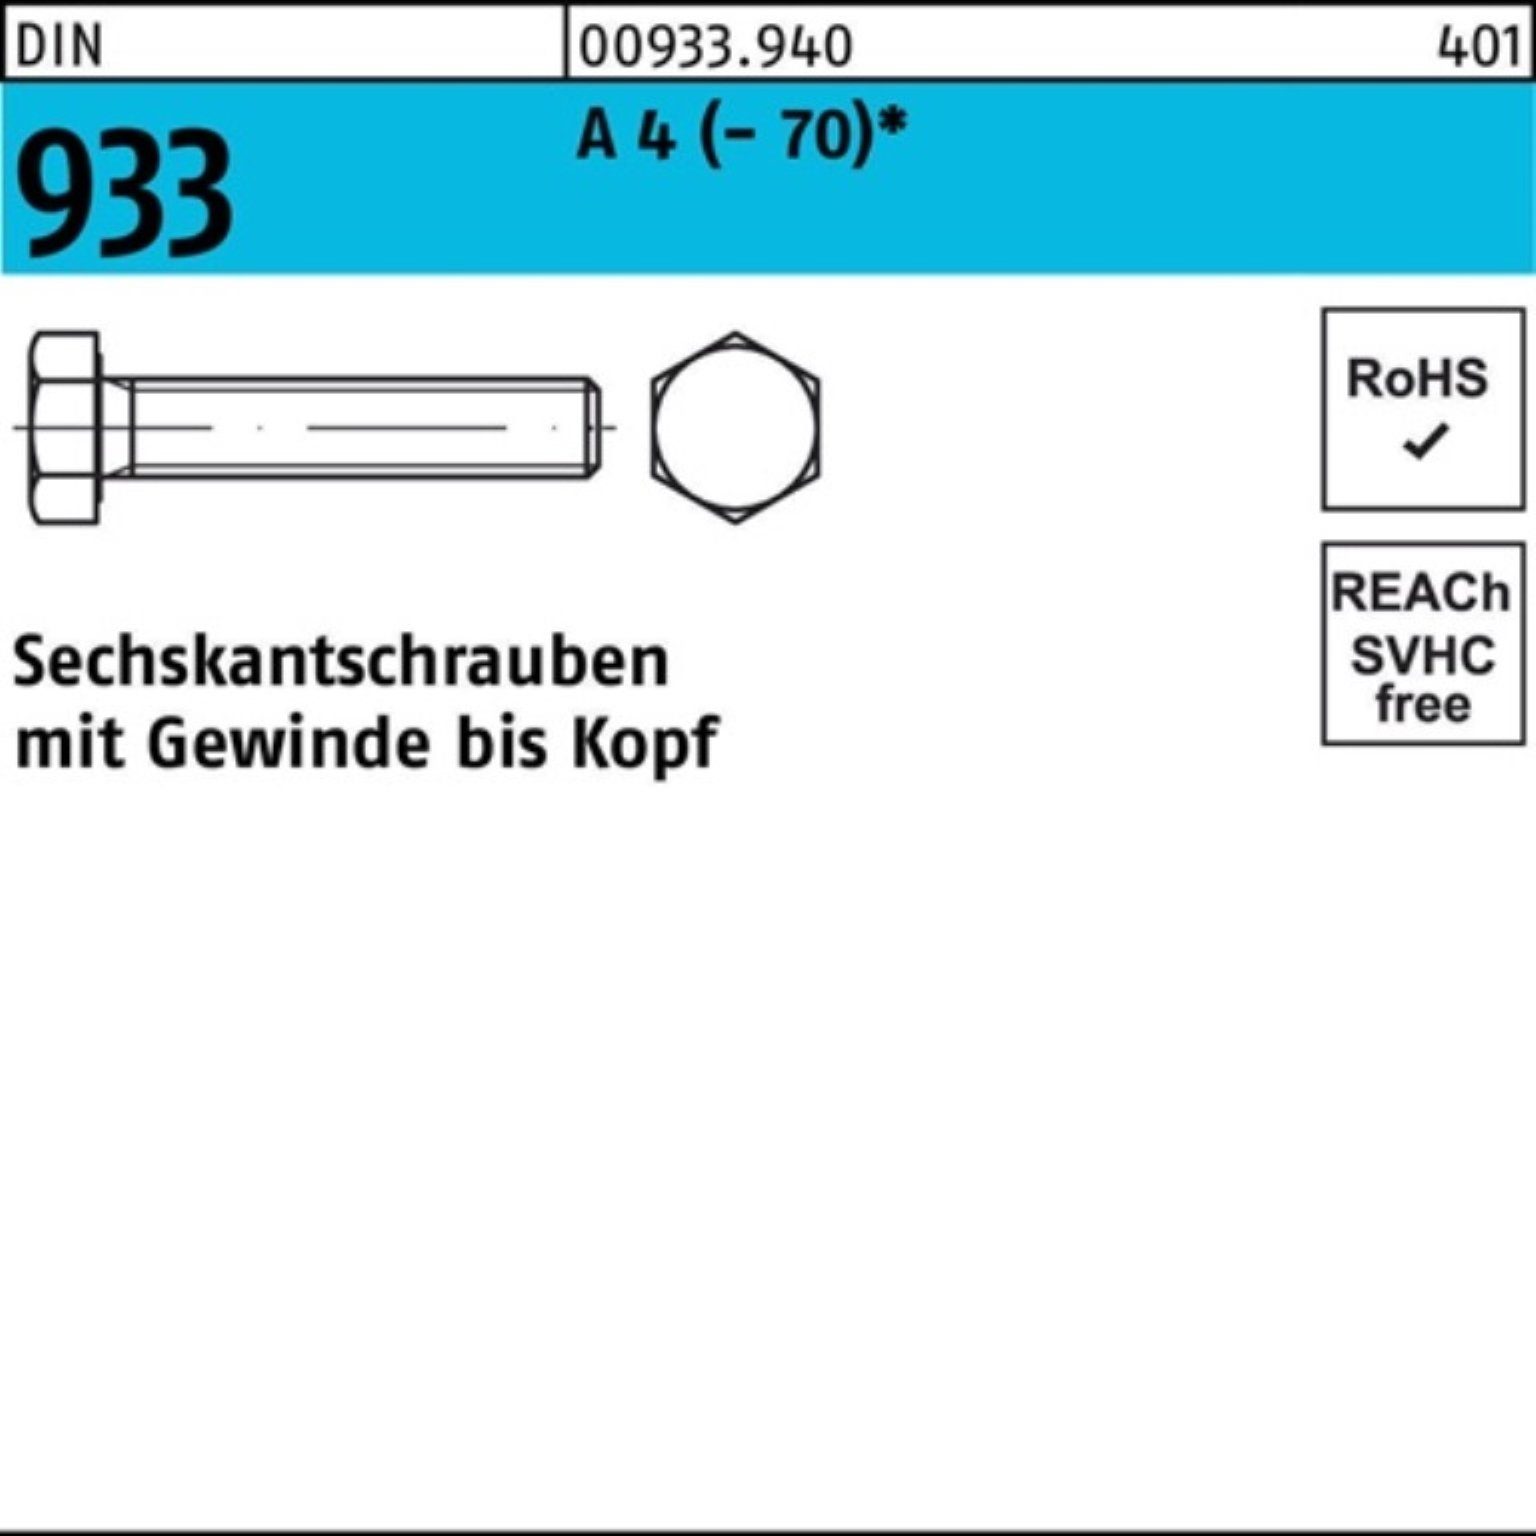 Reyher Sechskantschraube 100er 1 Sechskantschraube D (70) 933 A 120 Stück Pack VG DIN 4 M12x